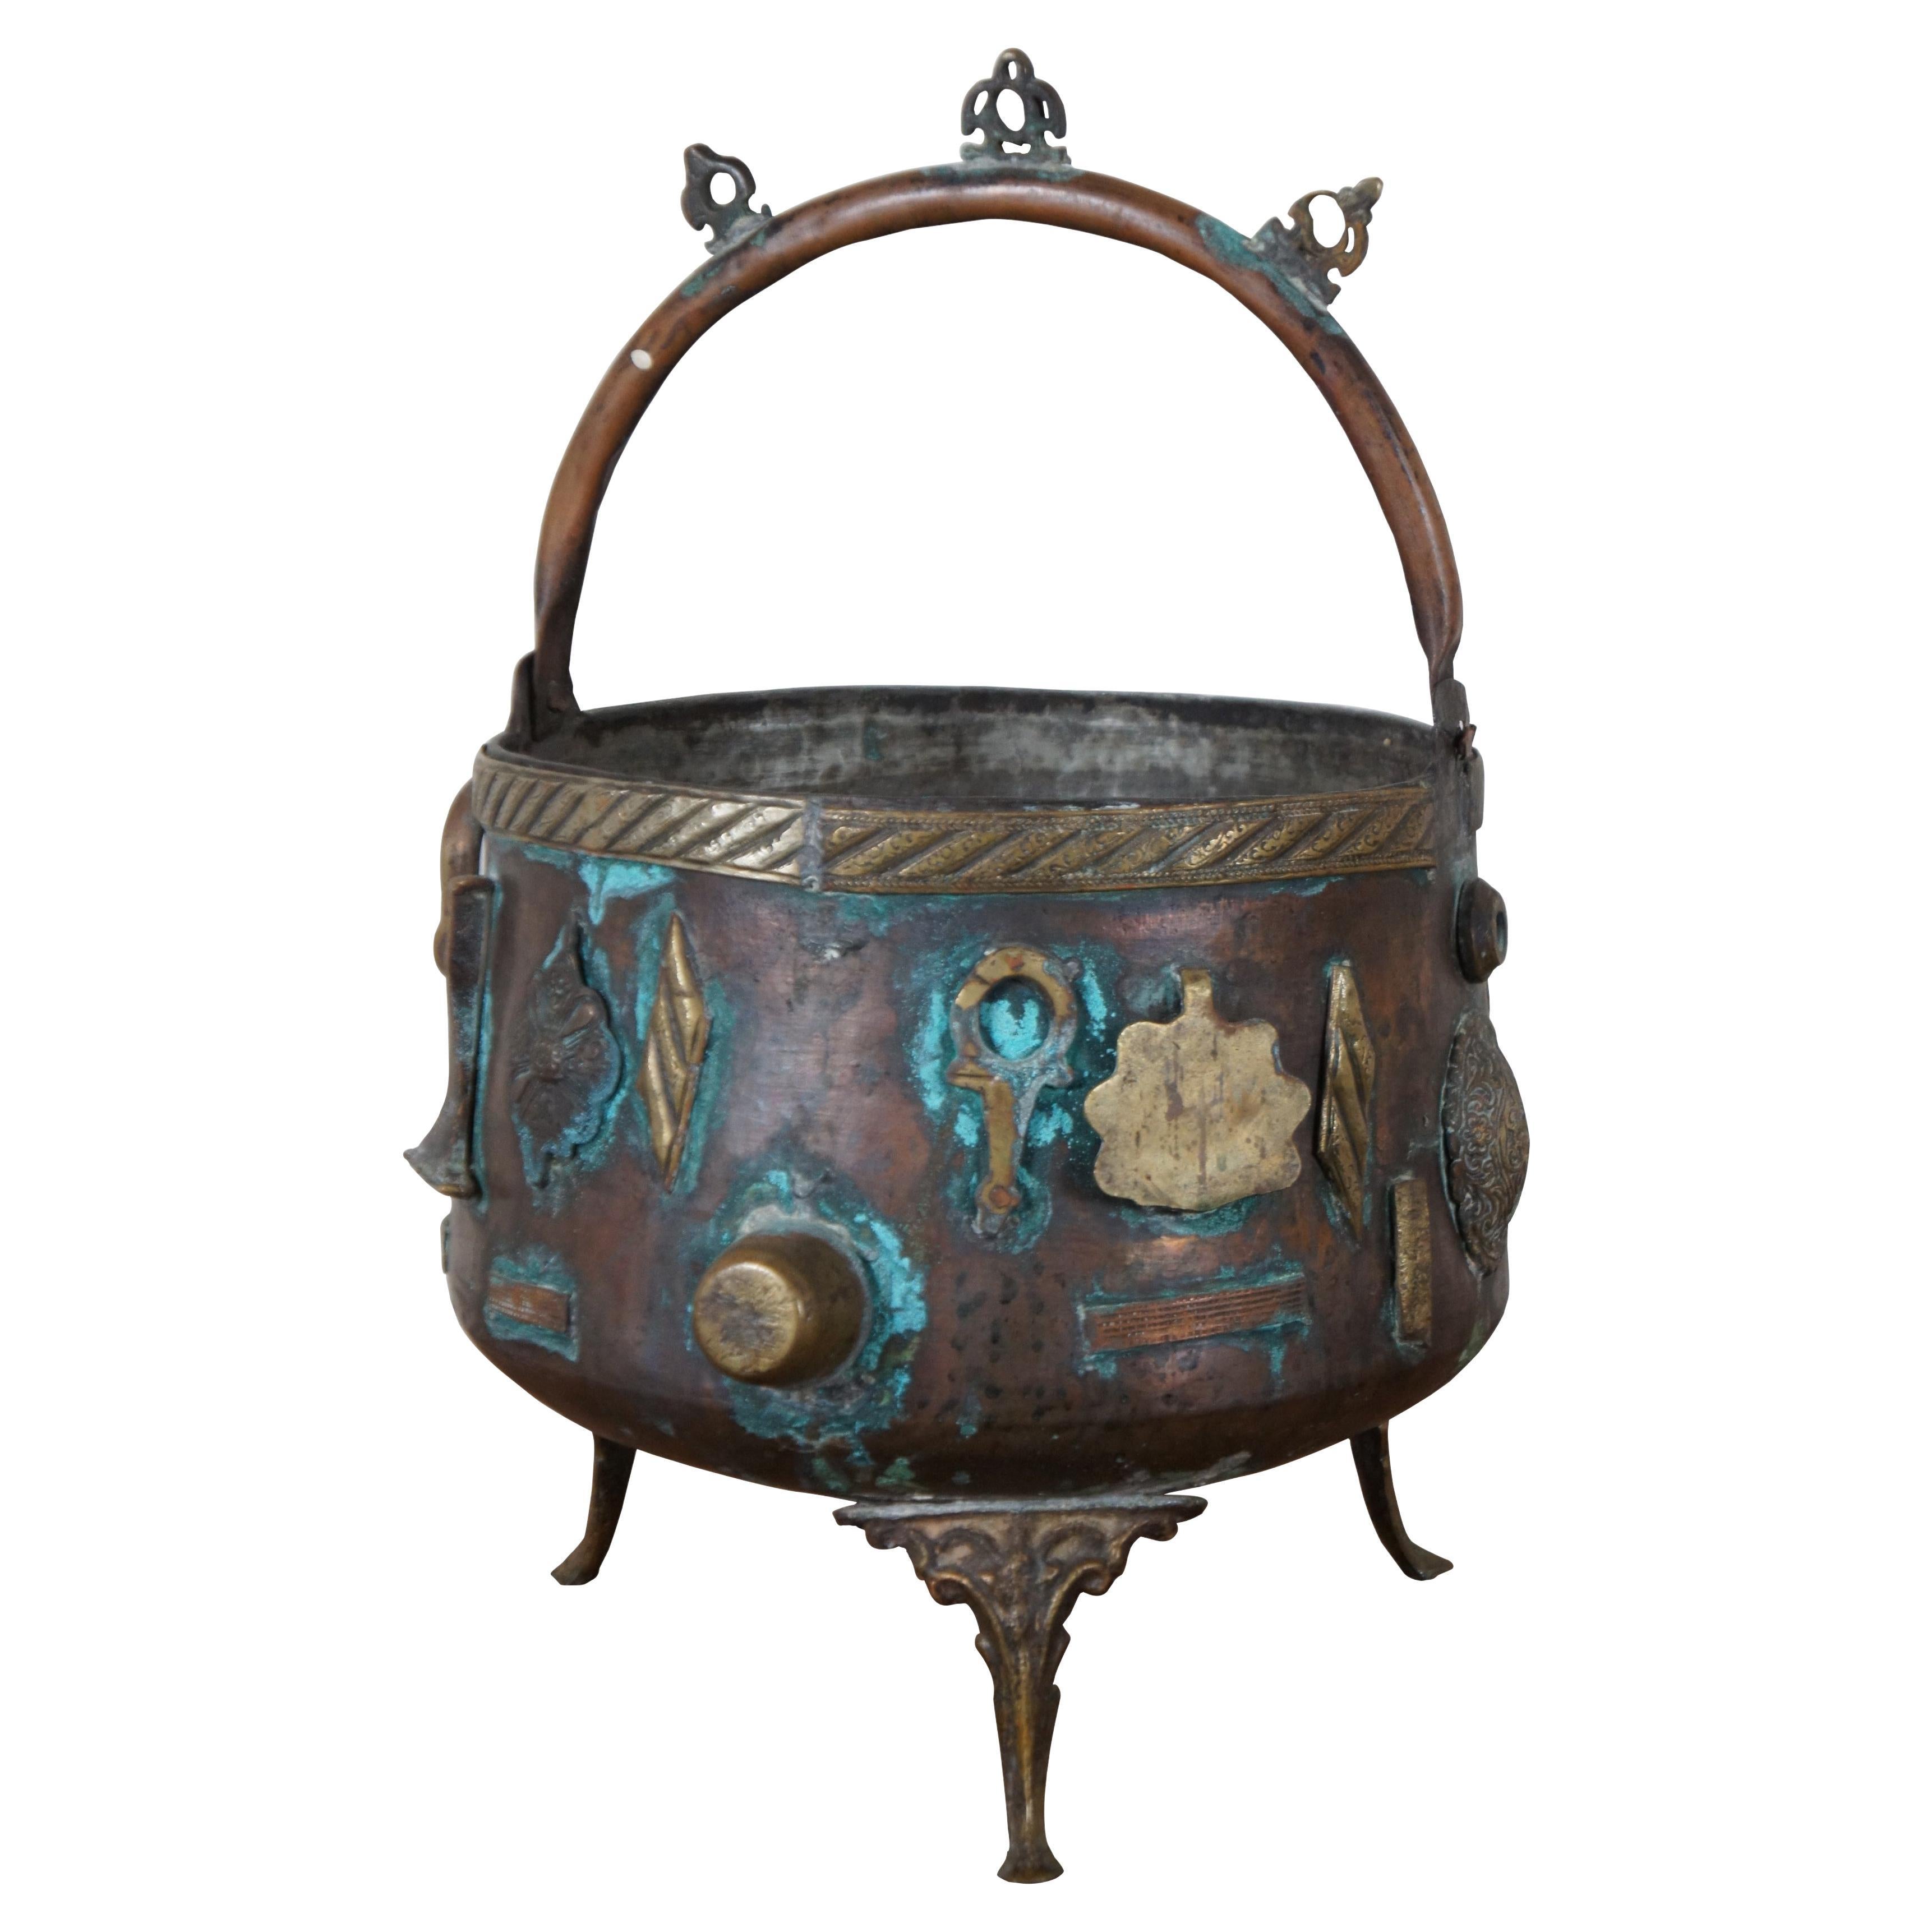 Tripod de jardinière Cauldron en bronze orné du 19ème siècle de style chinois